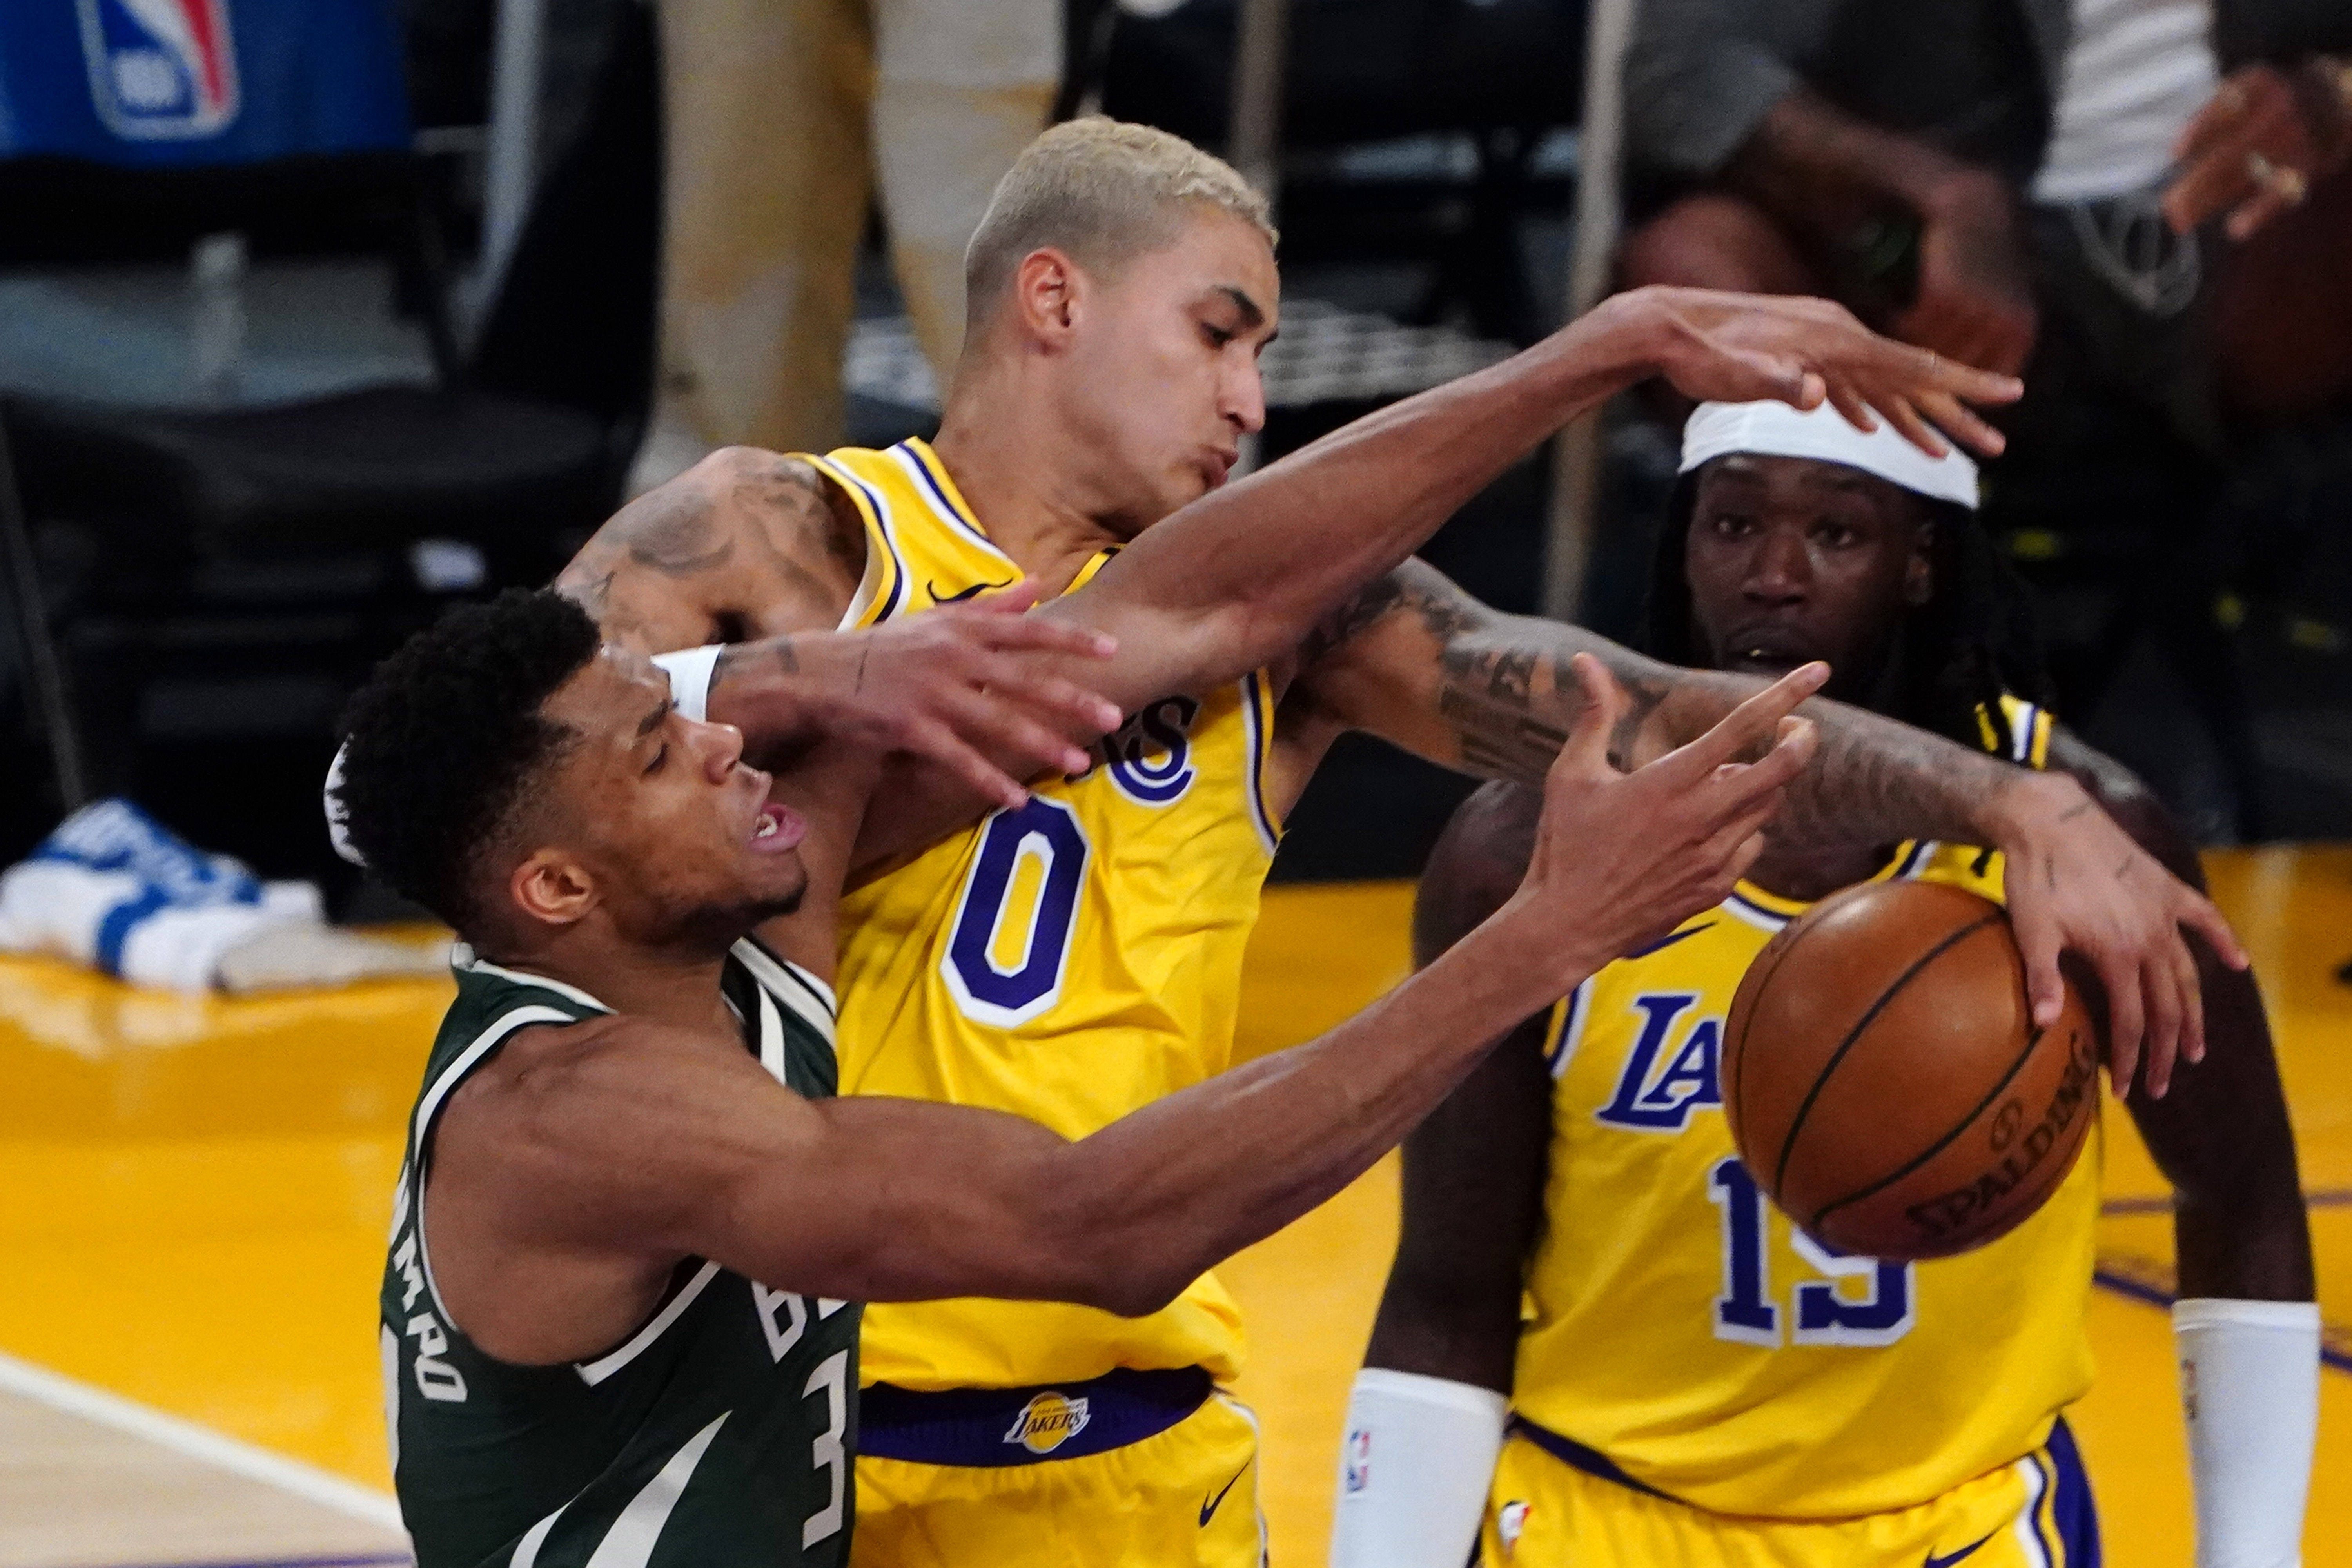 Bucks end skid, beat Lakers in Drummond’s brief debut